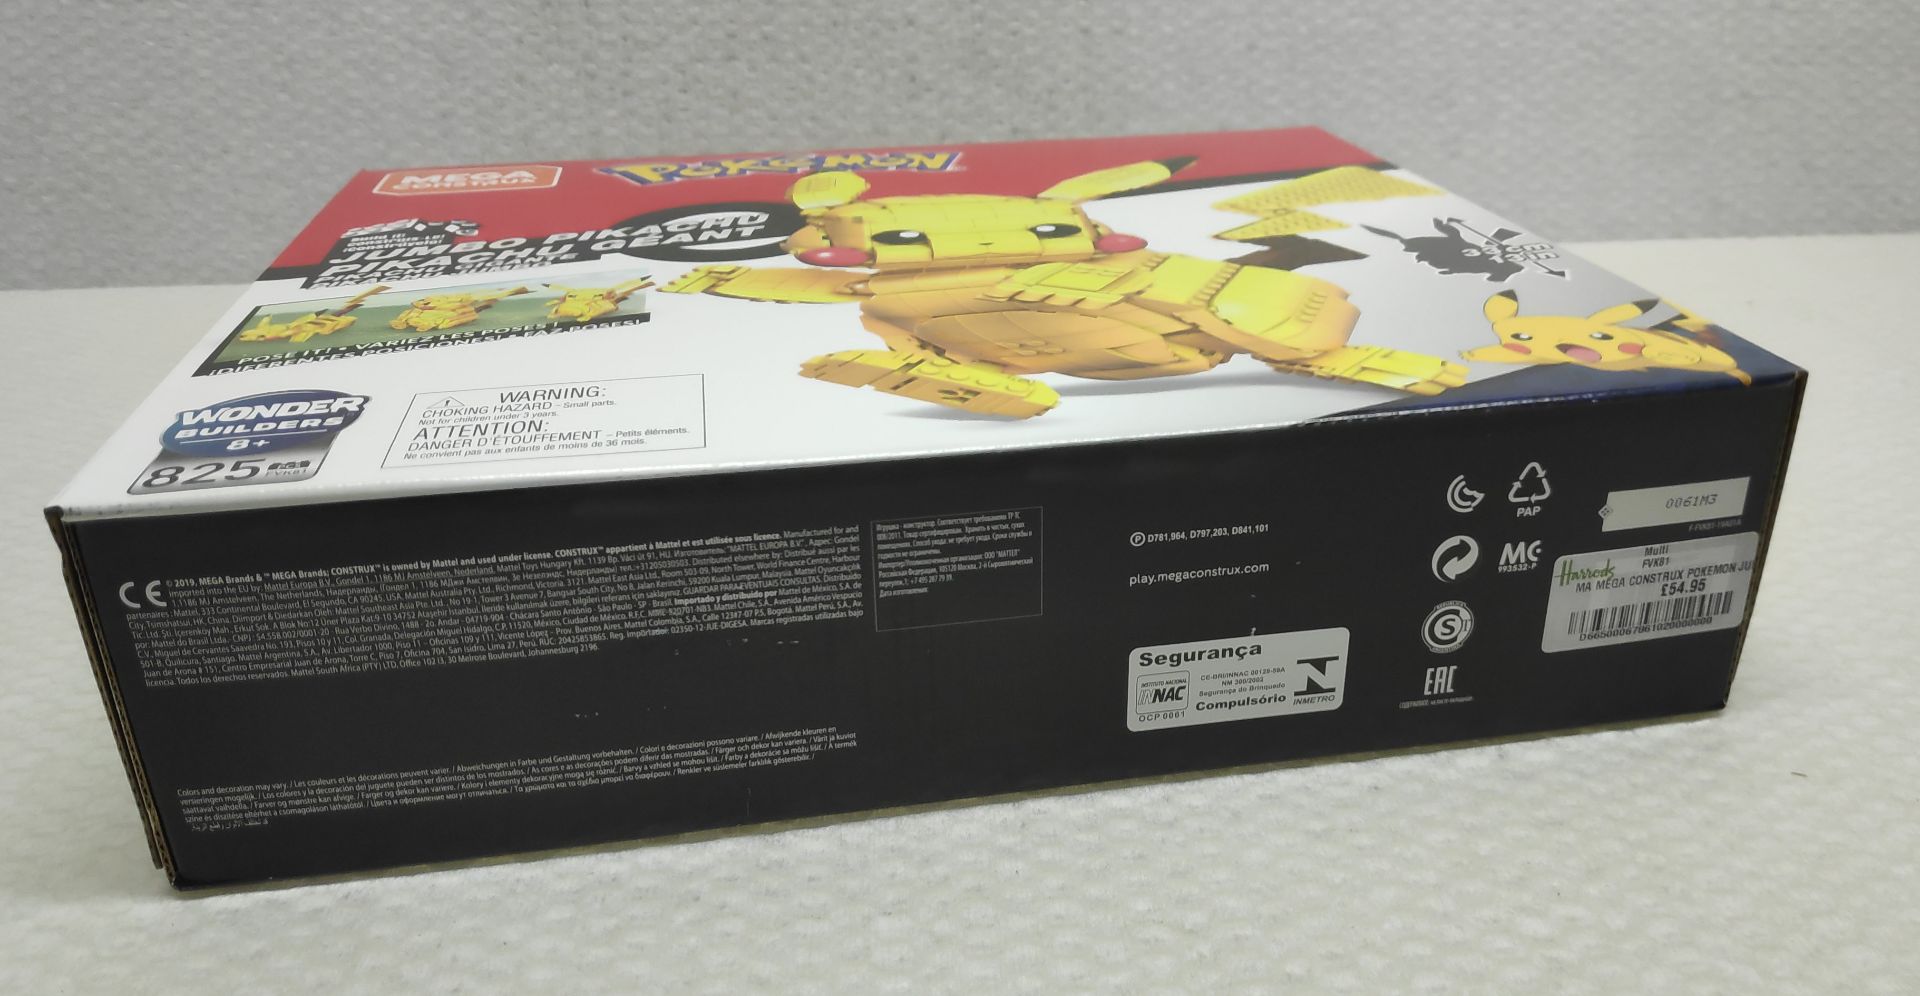 1 x Pokemon Mega Construx Jumbo Pikachu Lego-Style Building Set - New/Boxed - Image 7 of 7